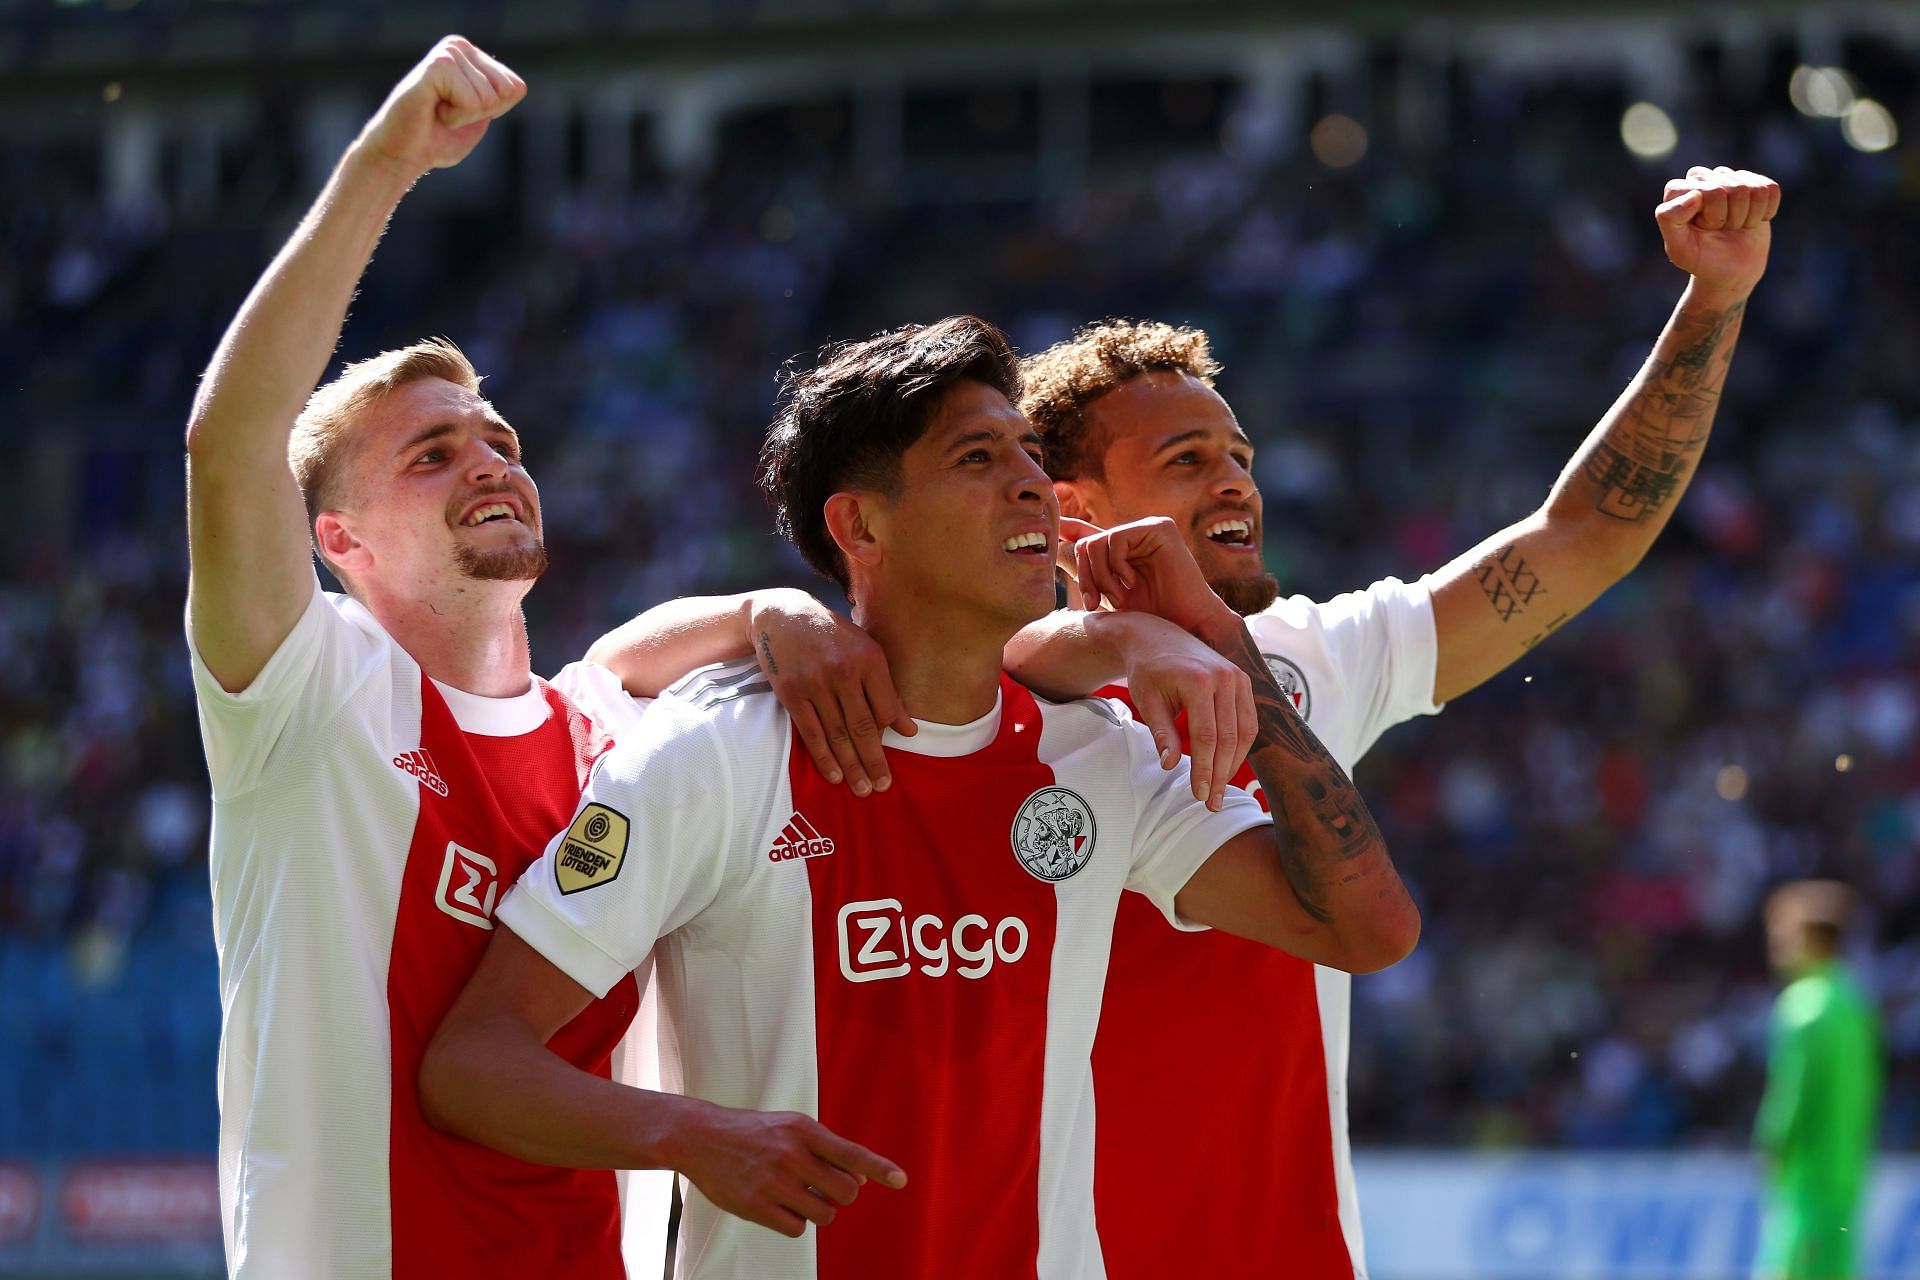 Fortuna Sittard play Ajax on Saturday